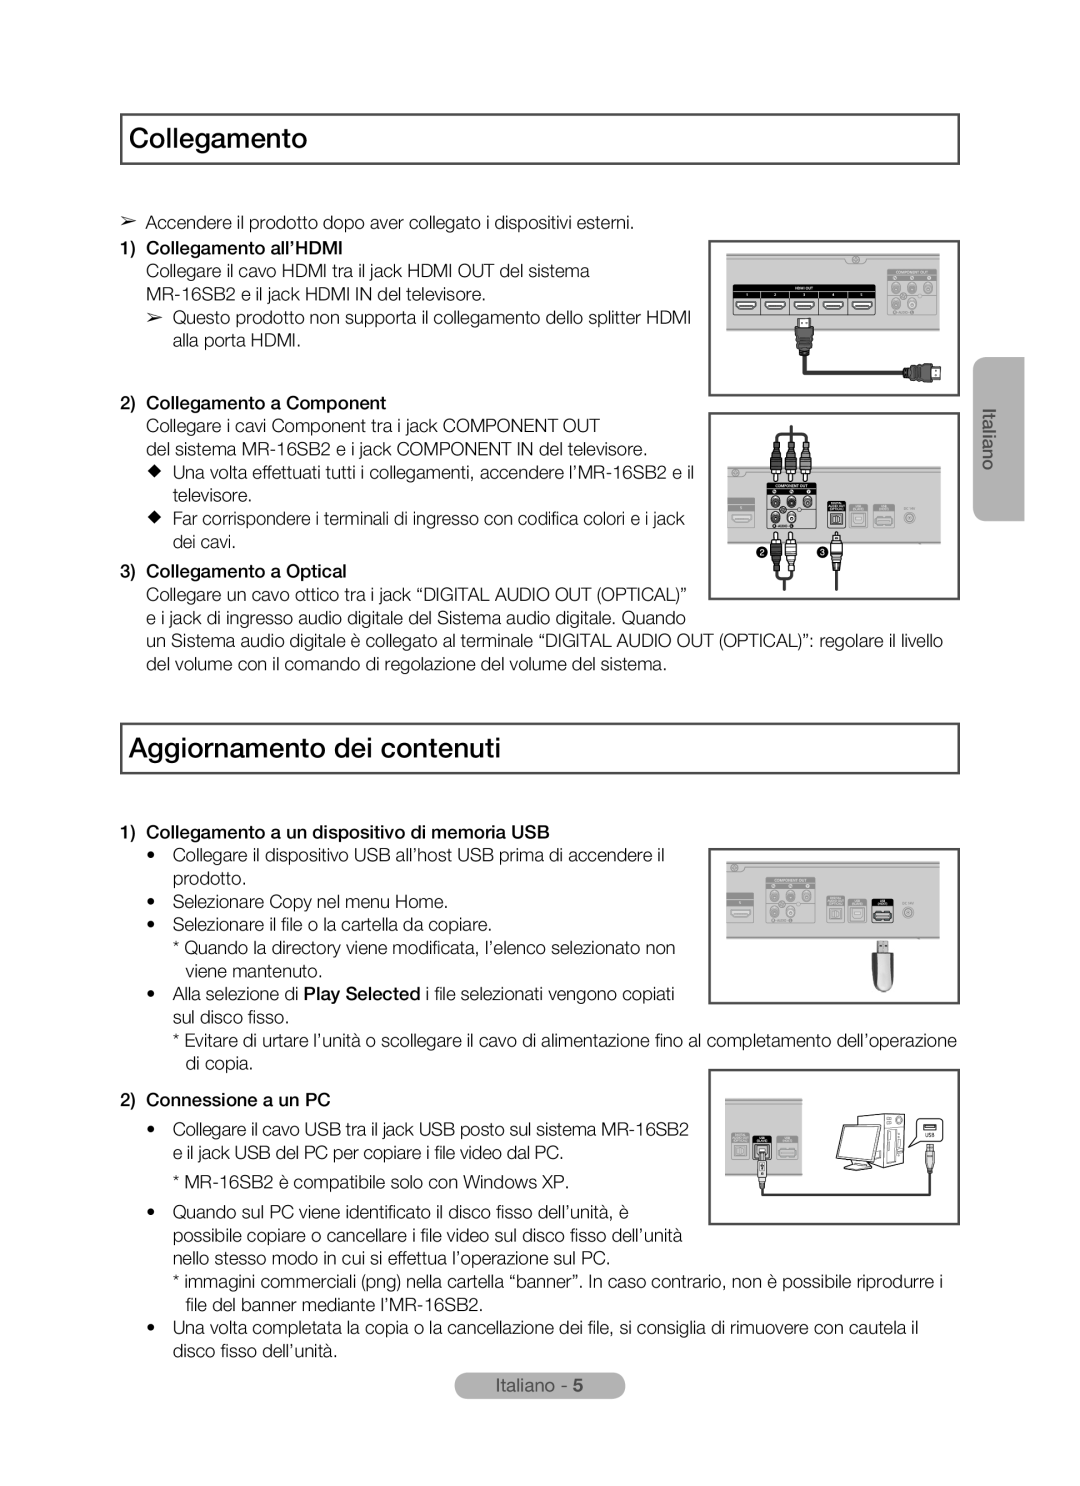 Samsung MR-16SB2 manual Collegamento, Aggiornamento dei contenuti, Italiano 